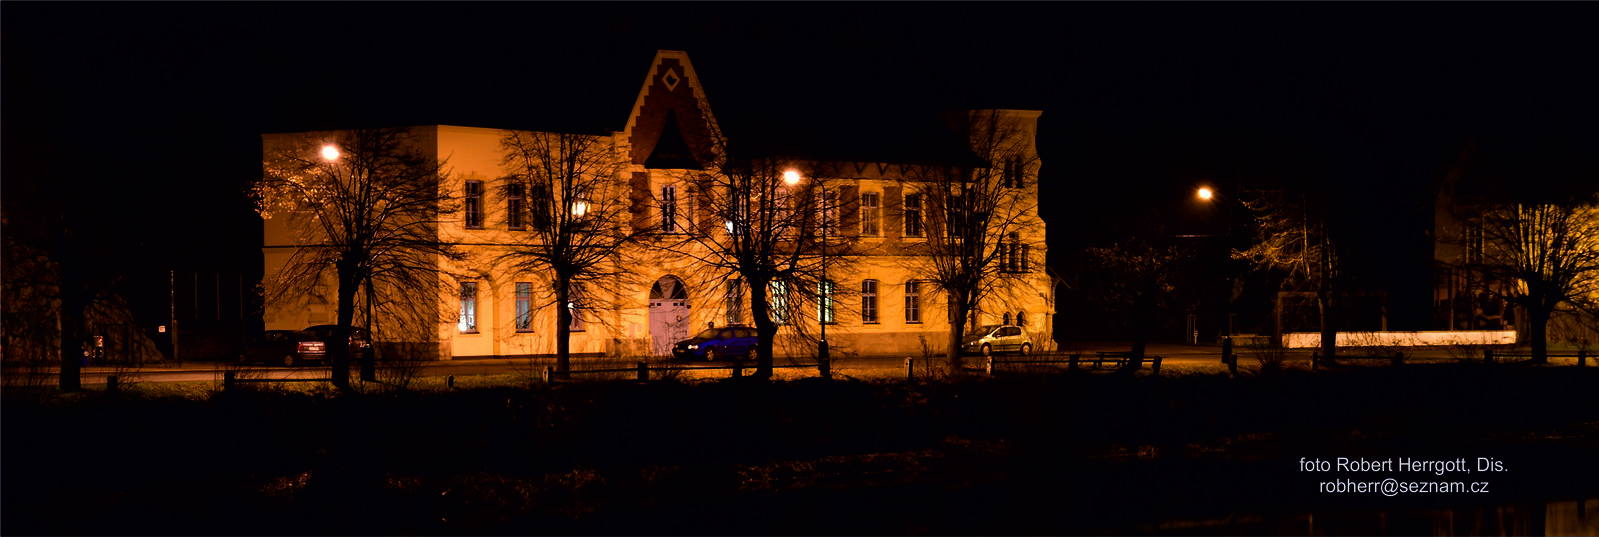 Dům Stallburg  v noci